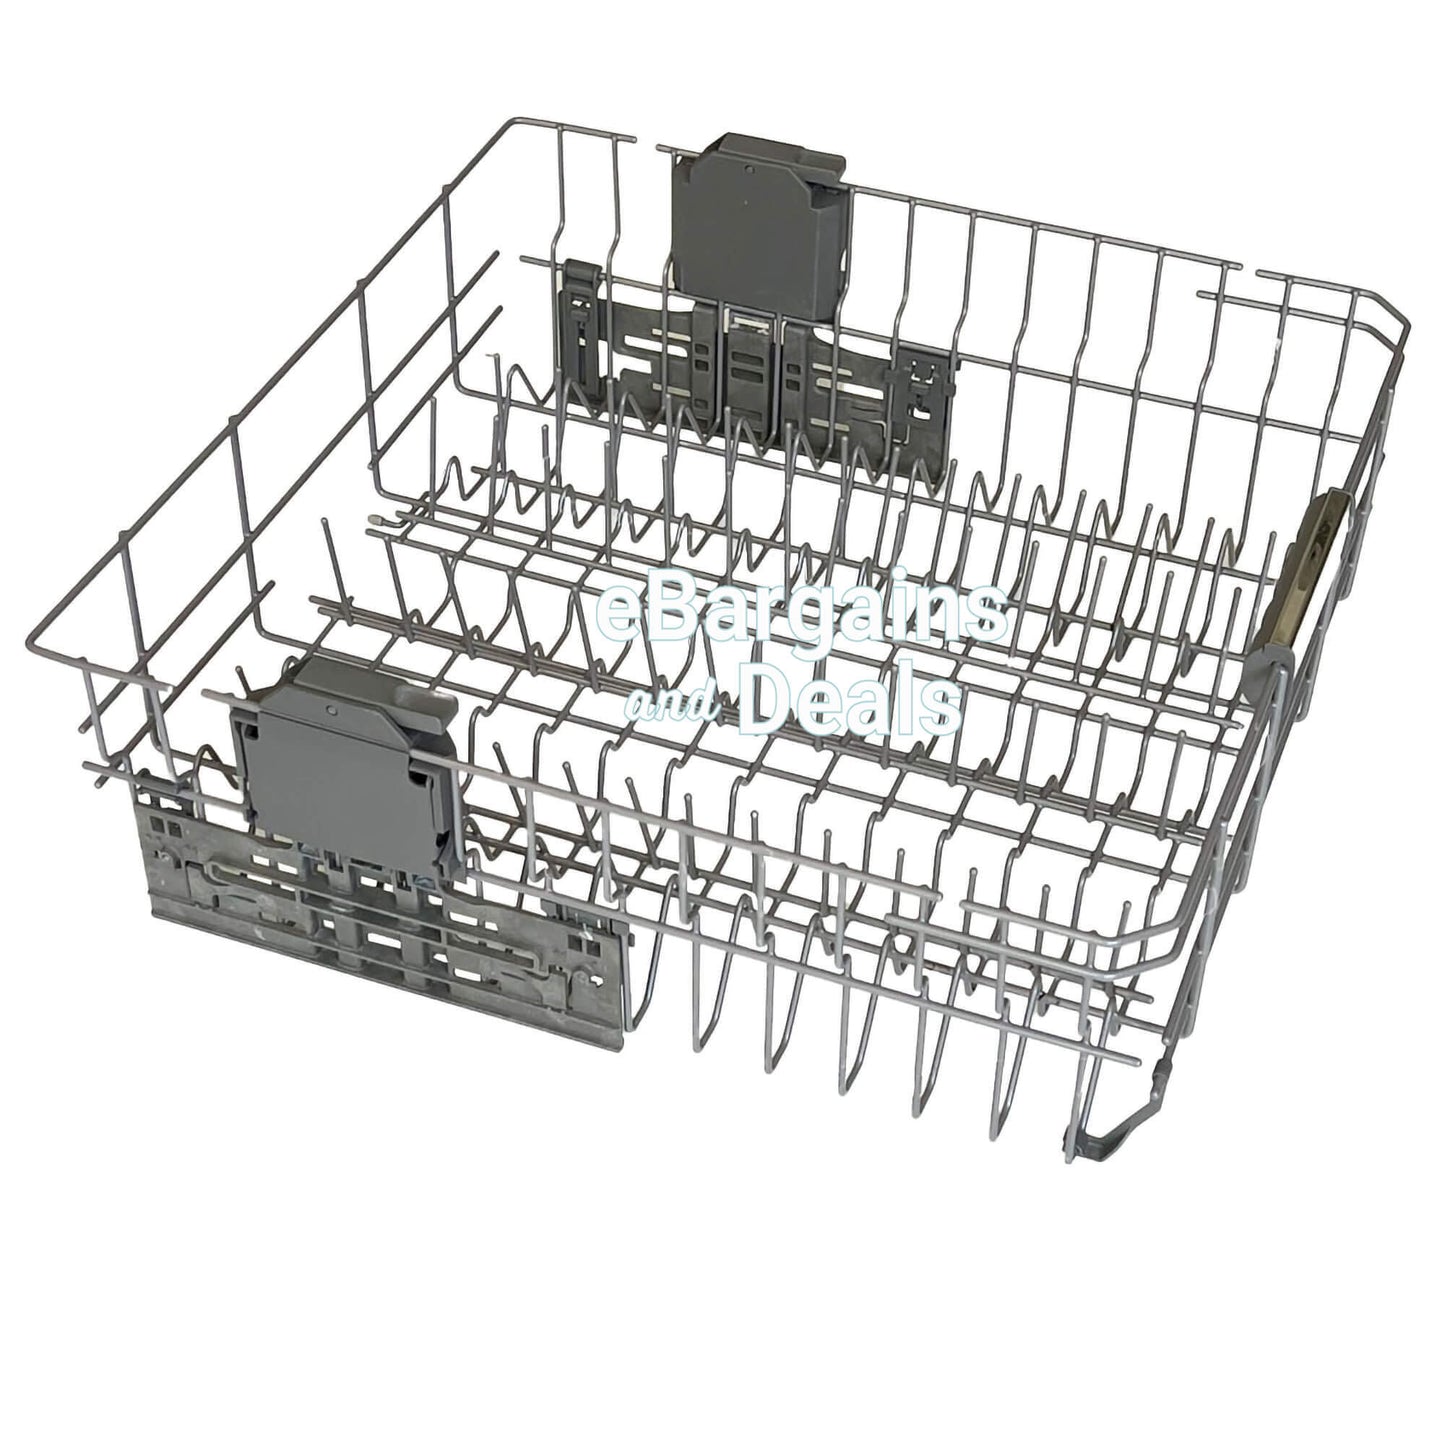 Whirlpool-Dishwasher-Upper-Rack-Assembly-WPW10350382-Clip_-Adjusters_-Nameplate_-Guide.-Shop-eBargainsAndDeals.com